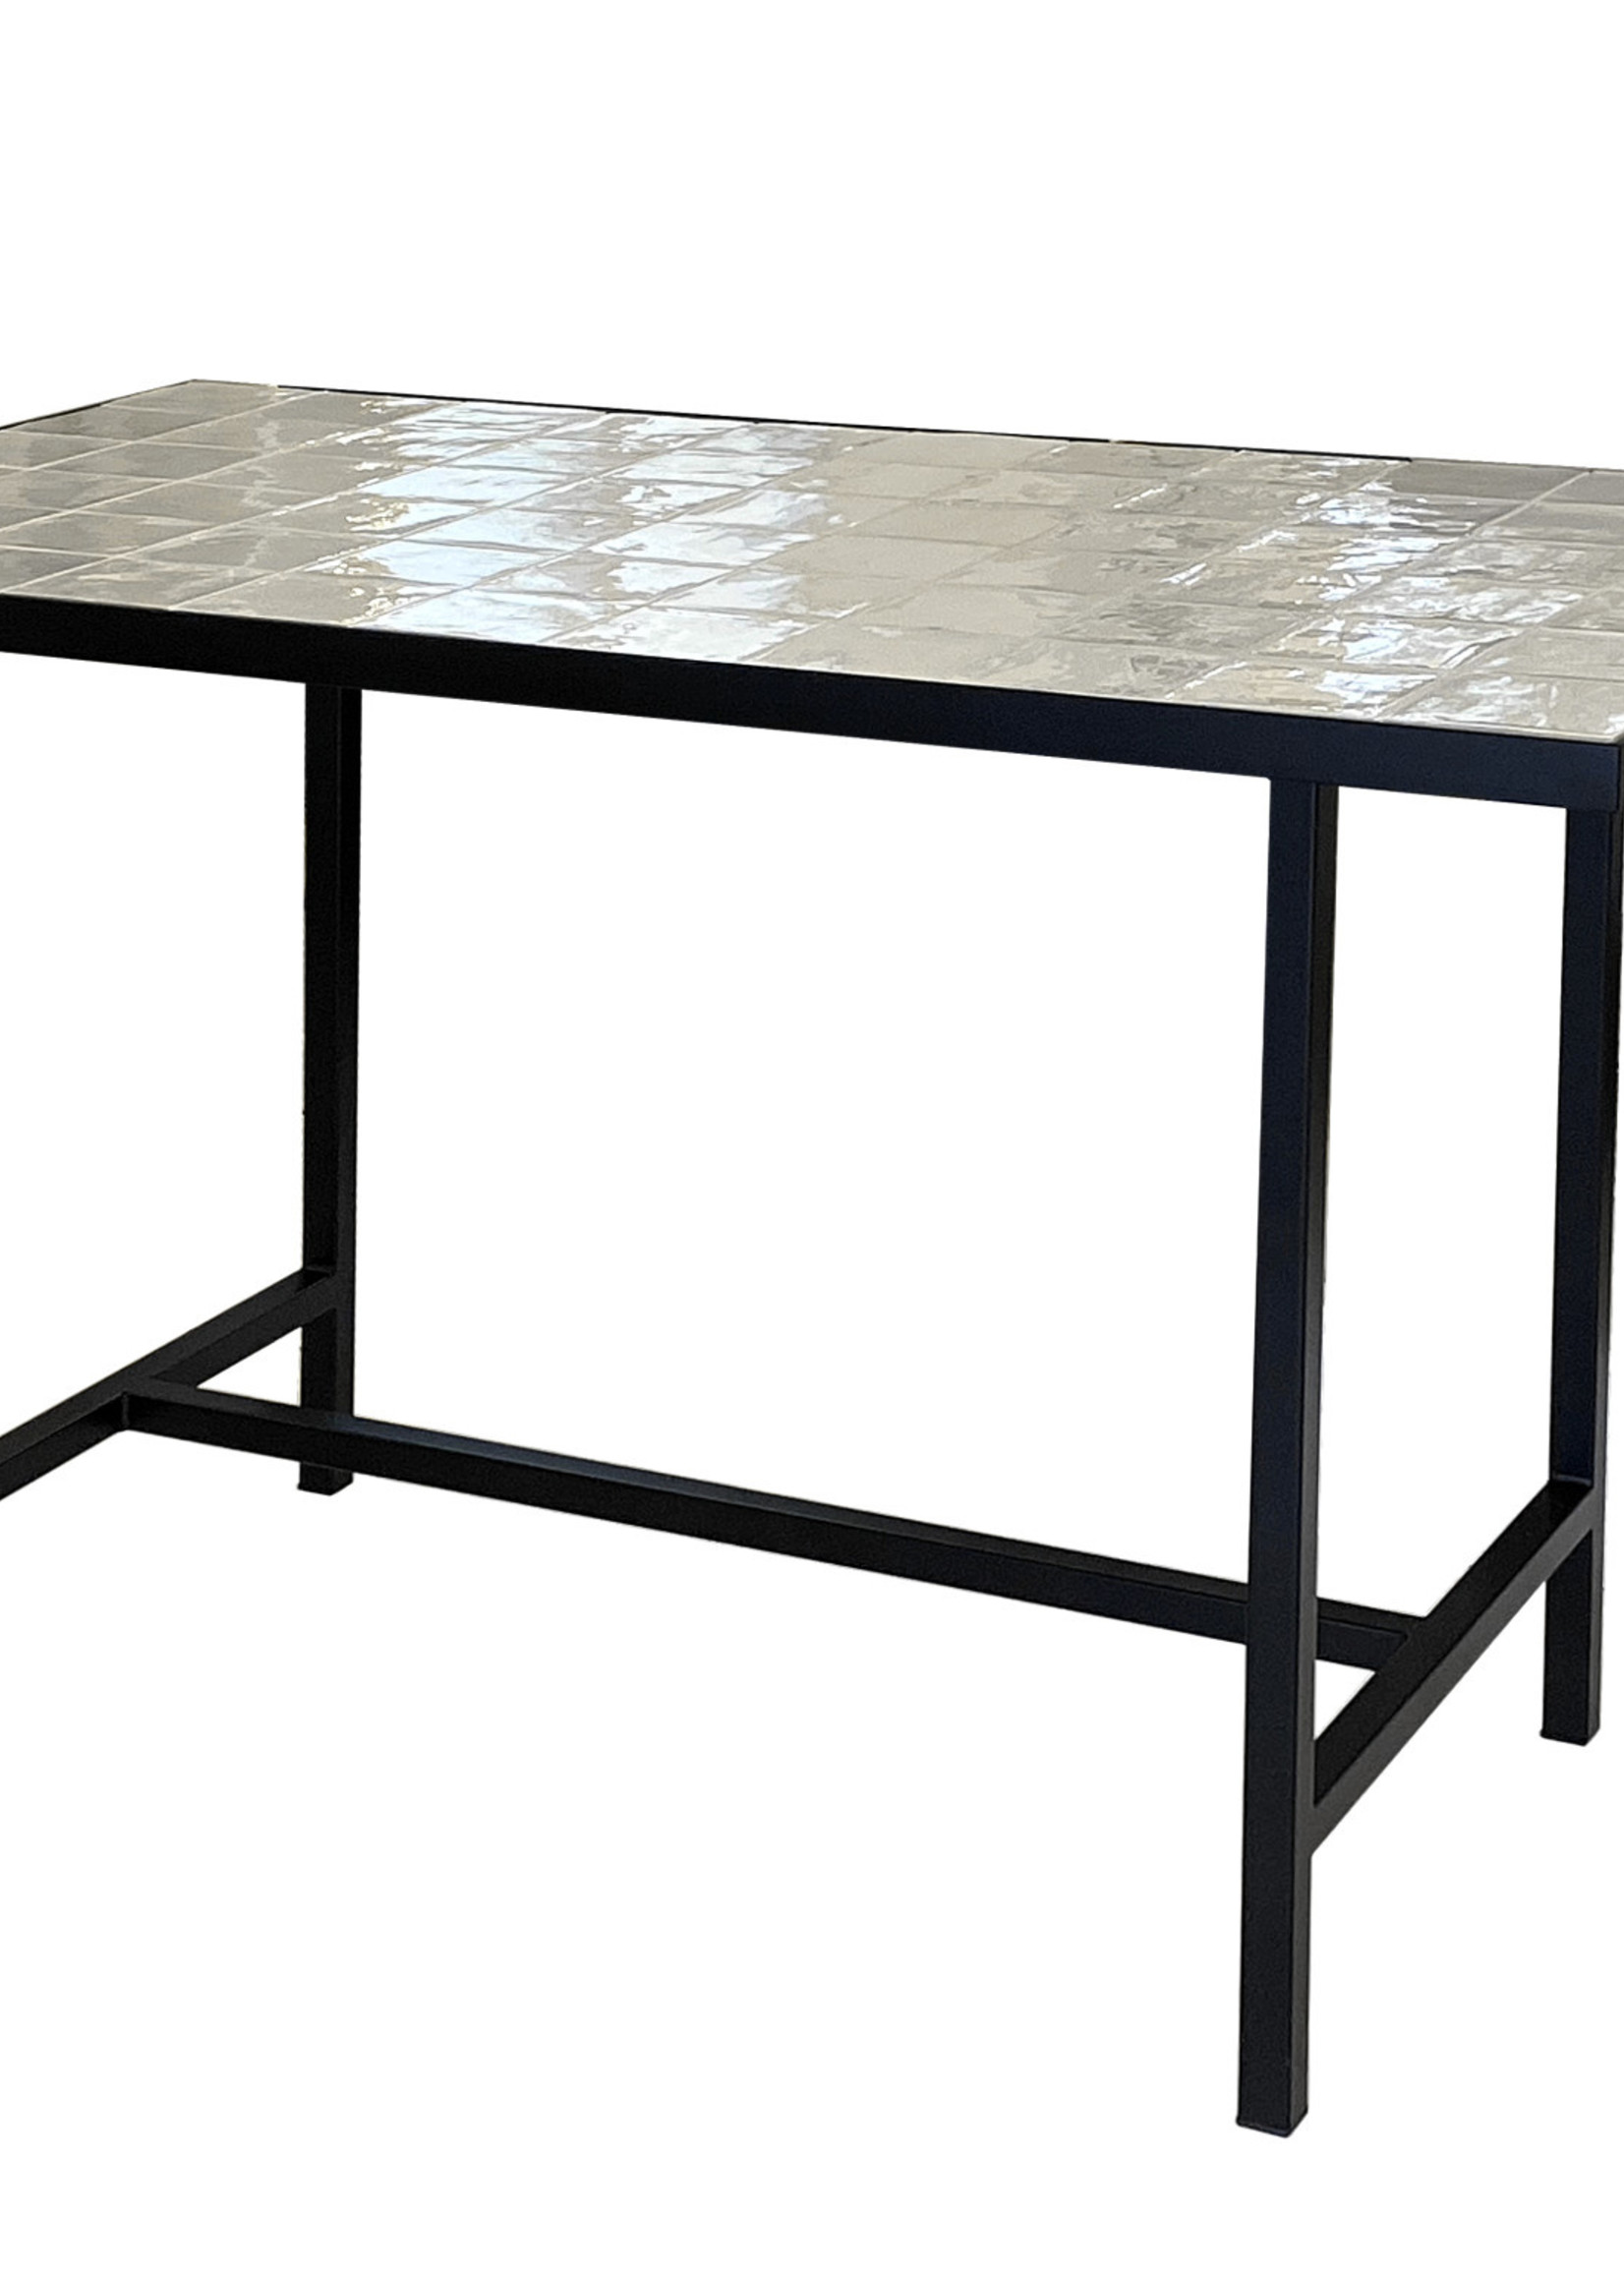 Tiled Bar Table